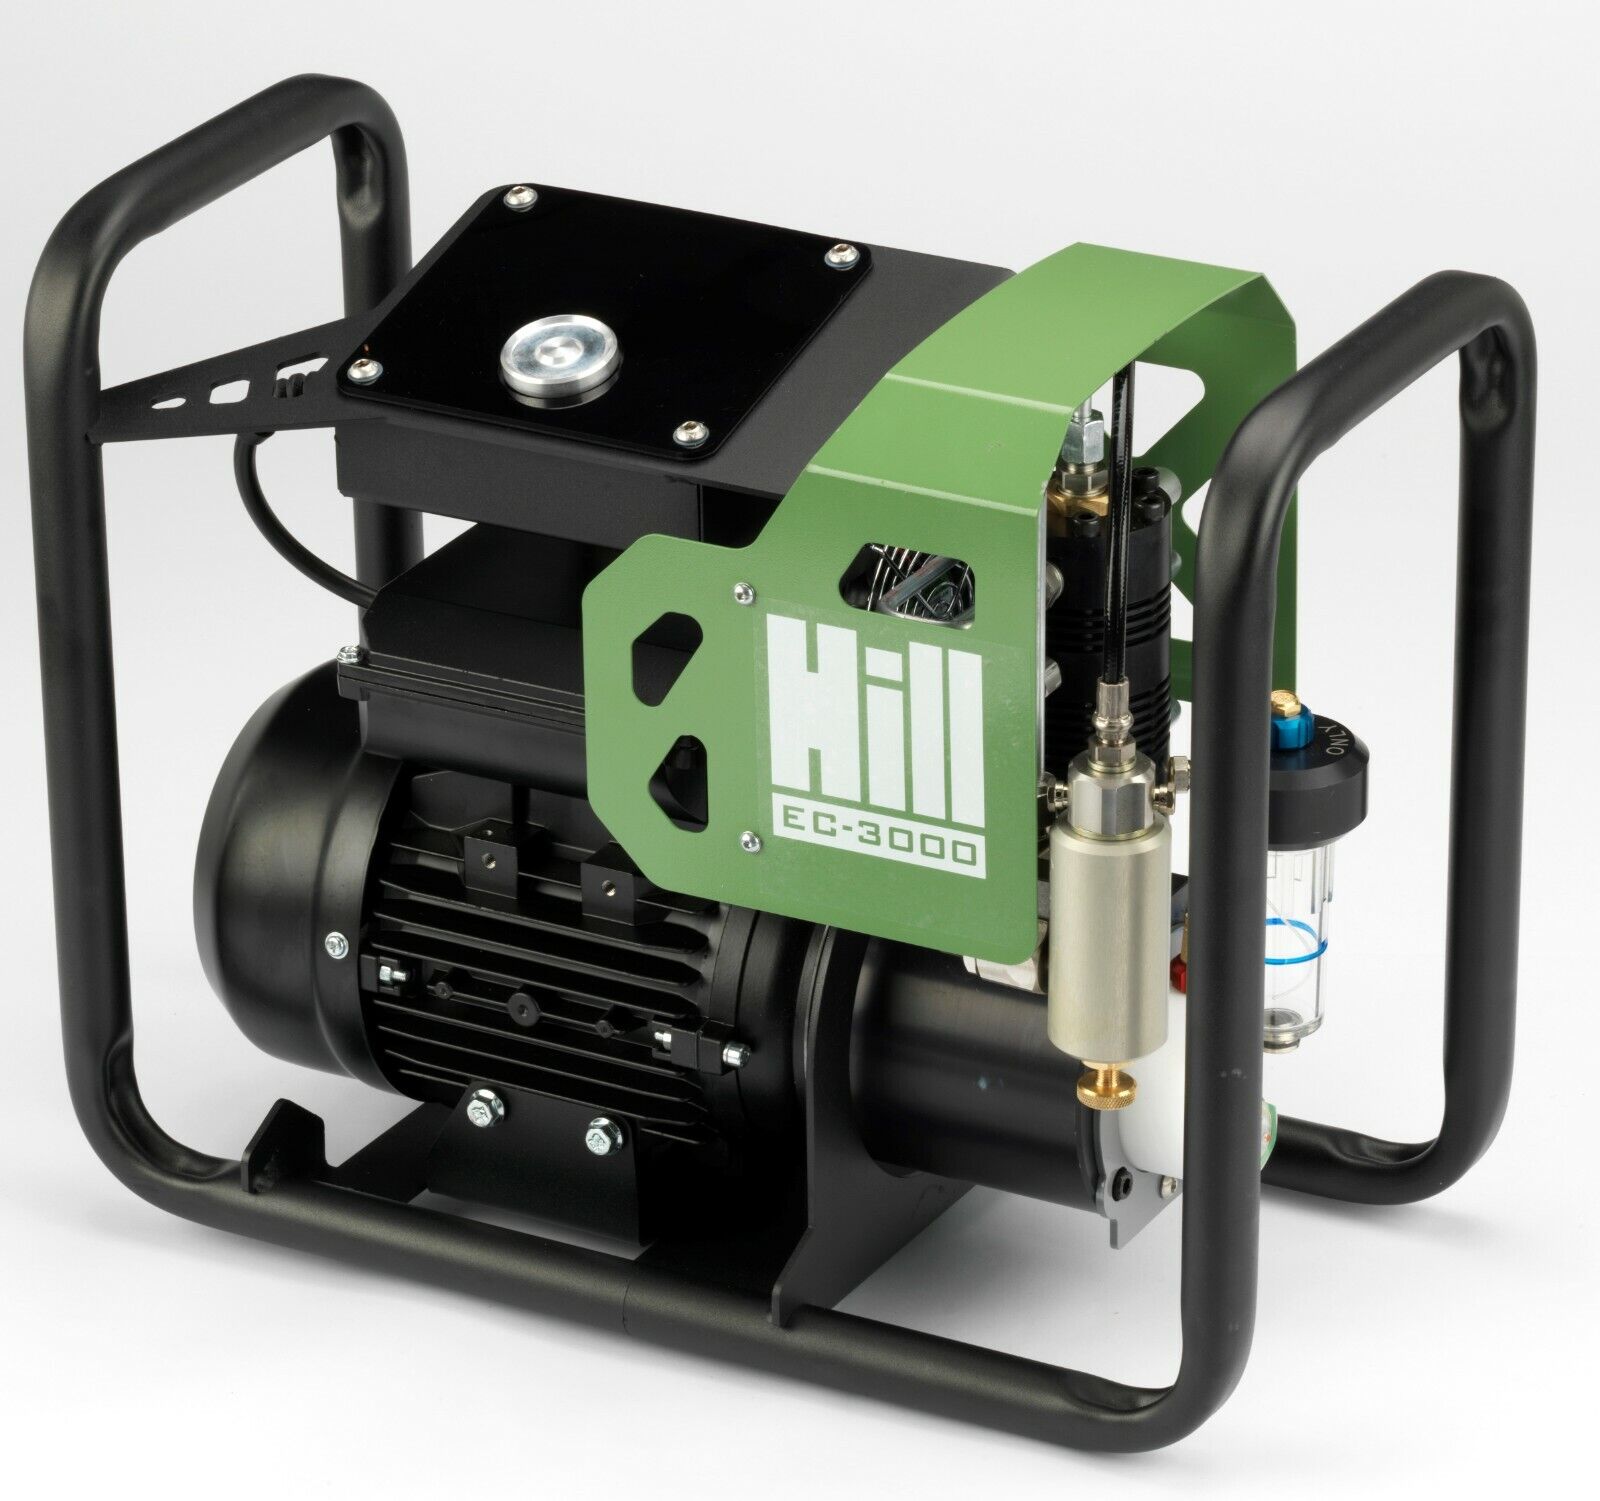 EC-3000 - The Hill Electric Air Compressor Pump by Hill Pumps -  EU 230v Model